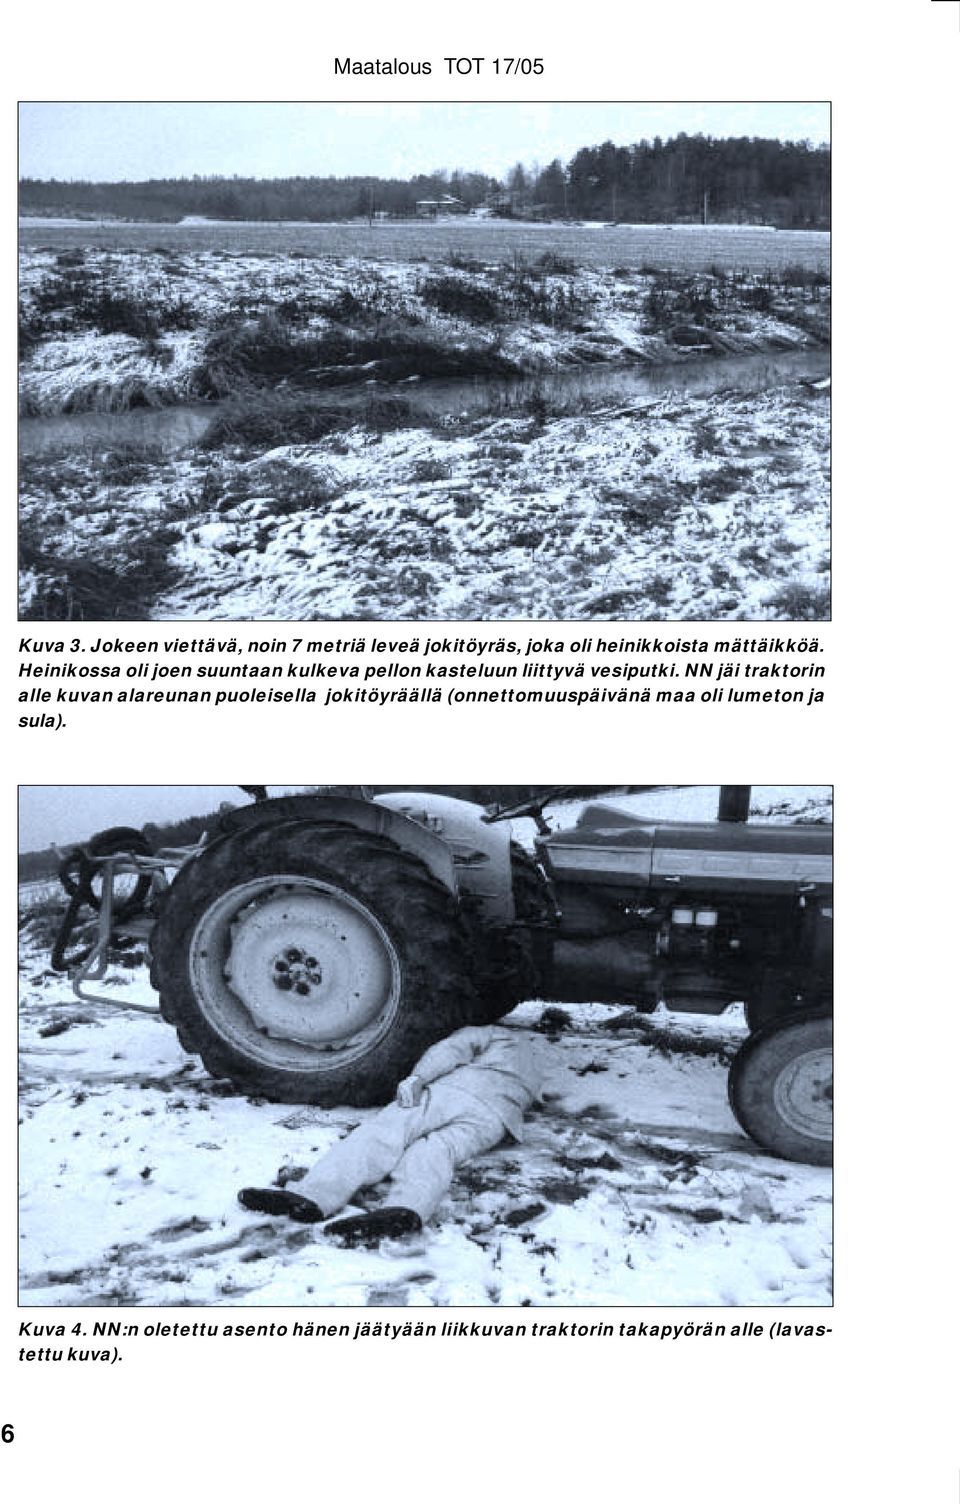 NN jäi traktorin alle kuvan alareunan puoleisella jokitöyräällä (onnettomuuspäivänä maa oli